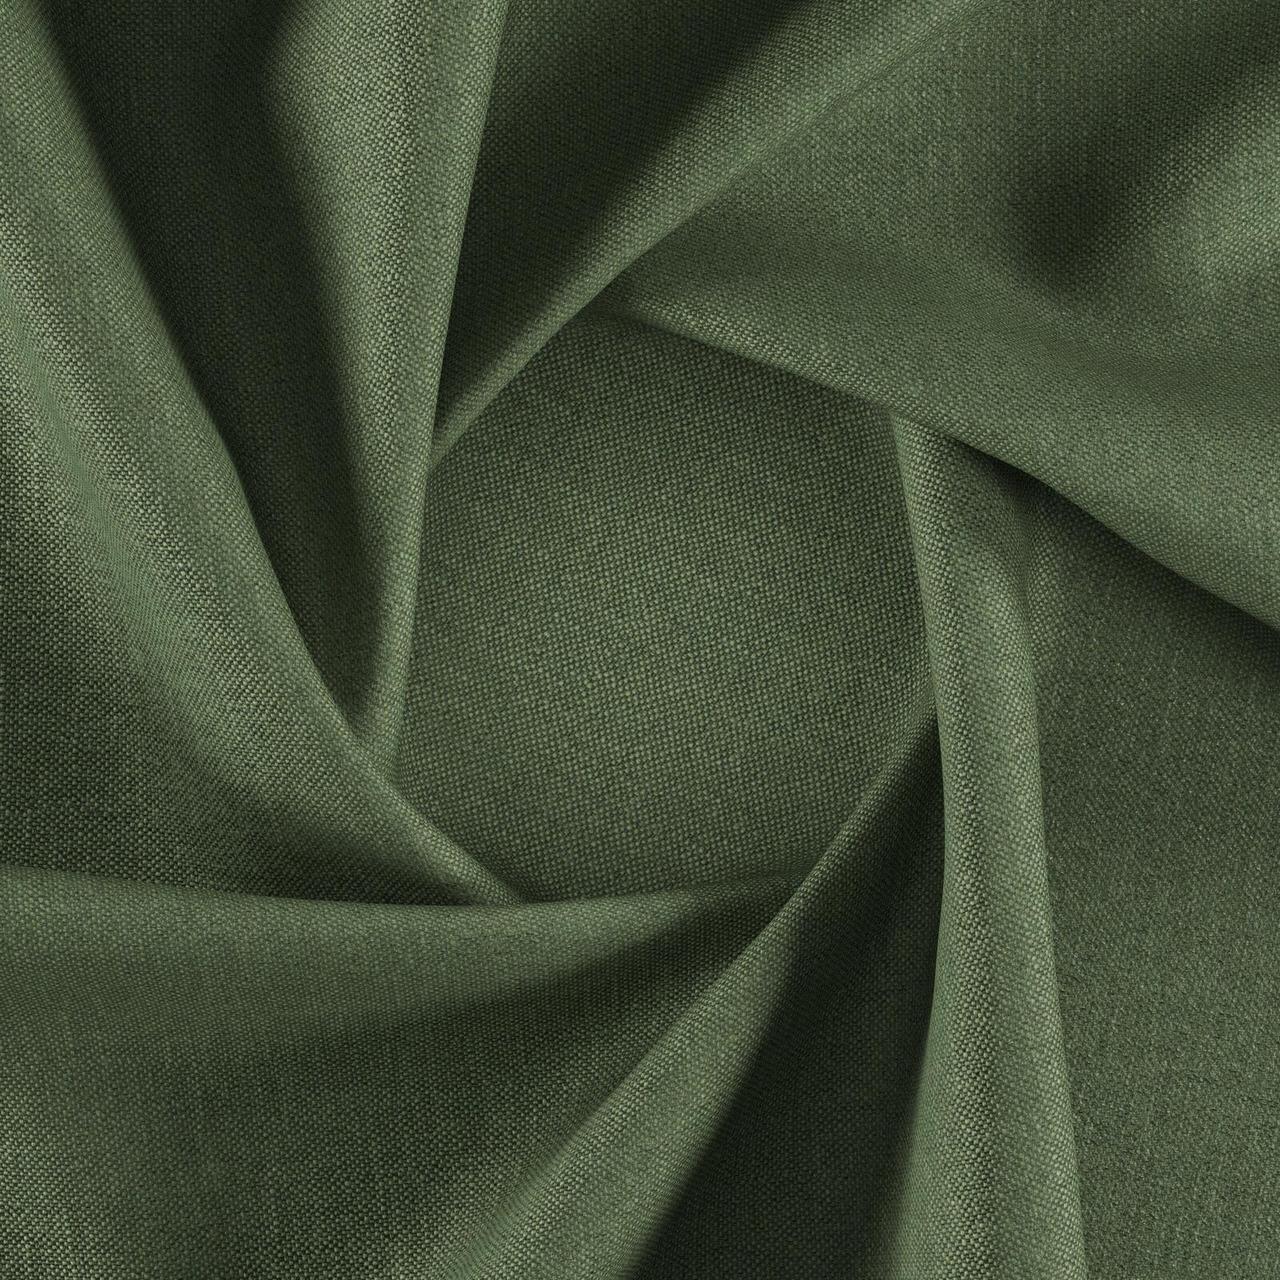 Тканина для перетяжки м'яких меблів шеніл Перфекто (Perfecto) зеленого кольору